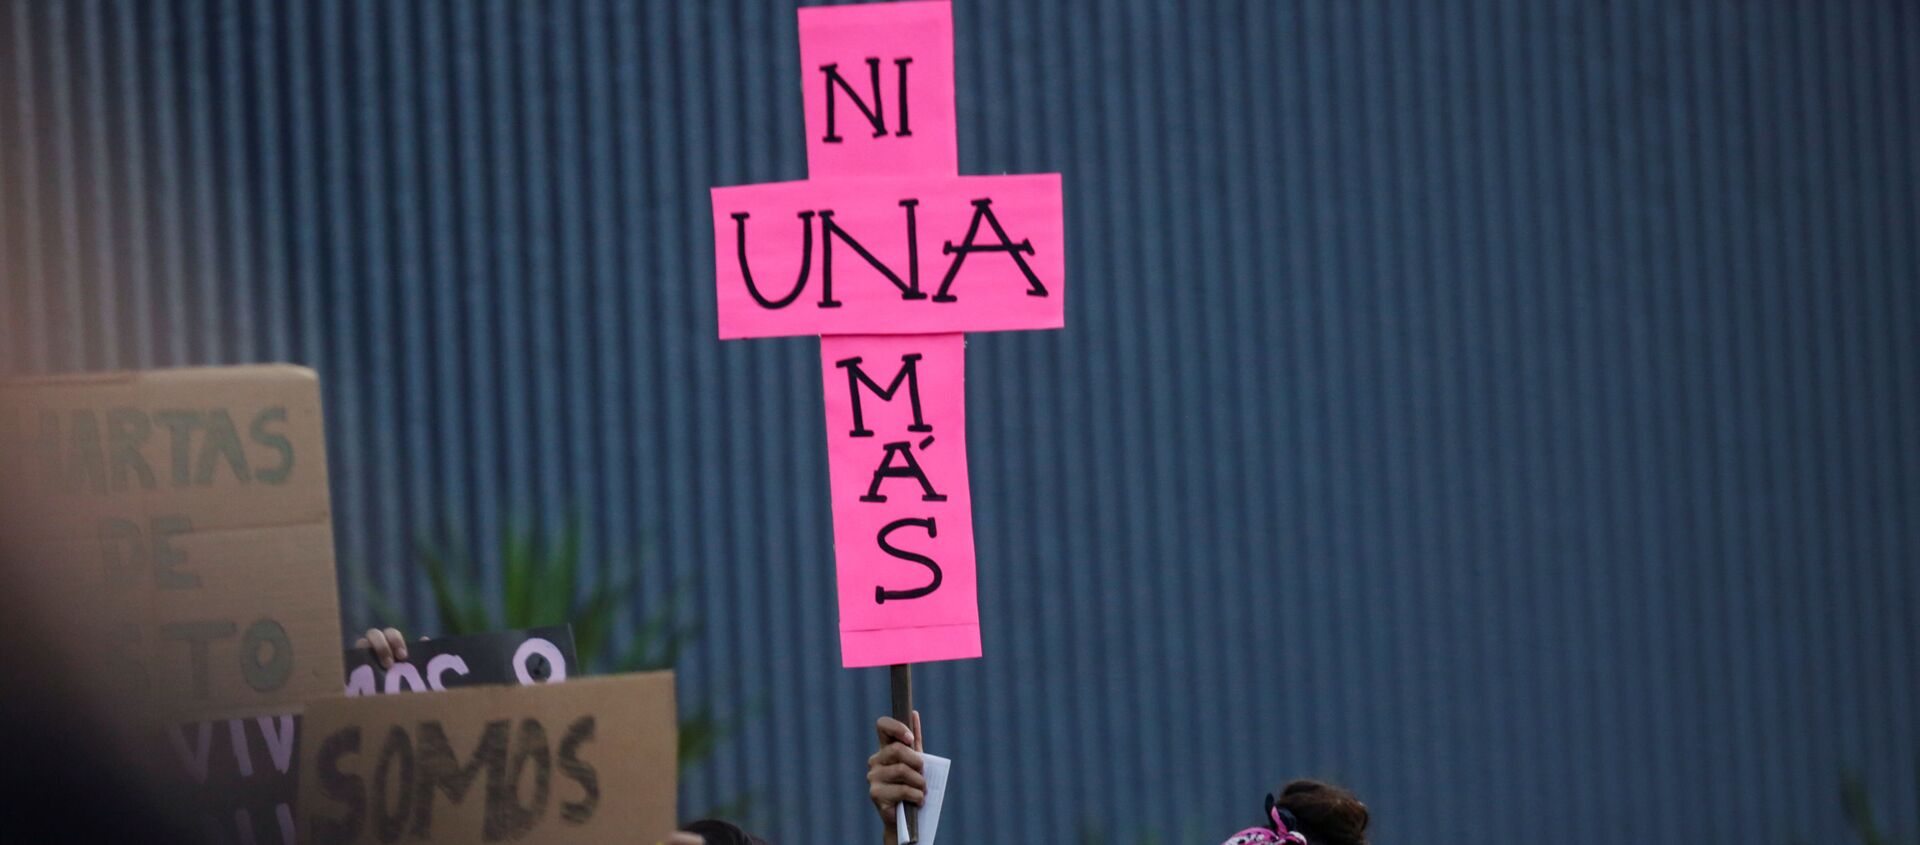 Manifestación en México contra la violencia hacia las mujeres - Sputnik Mundo, 1920, 21.08.2019